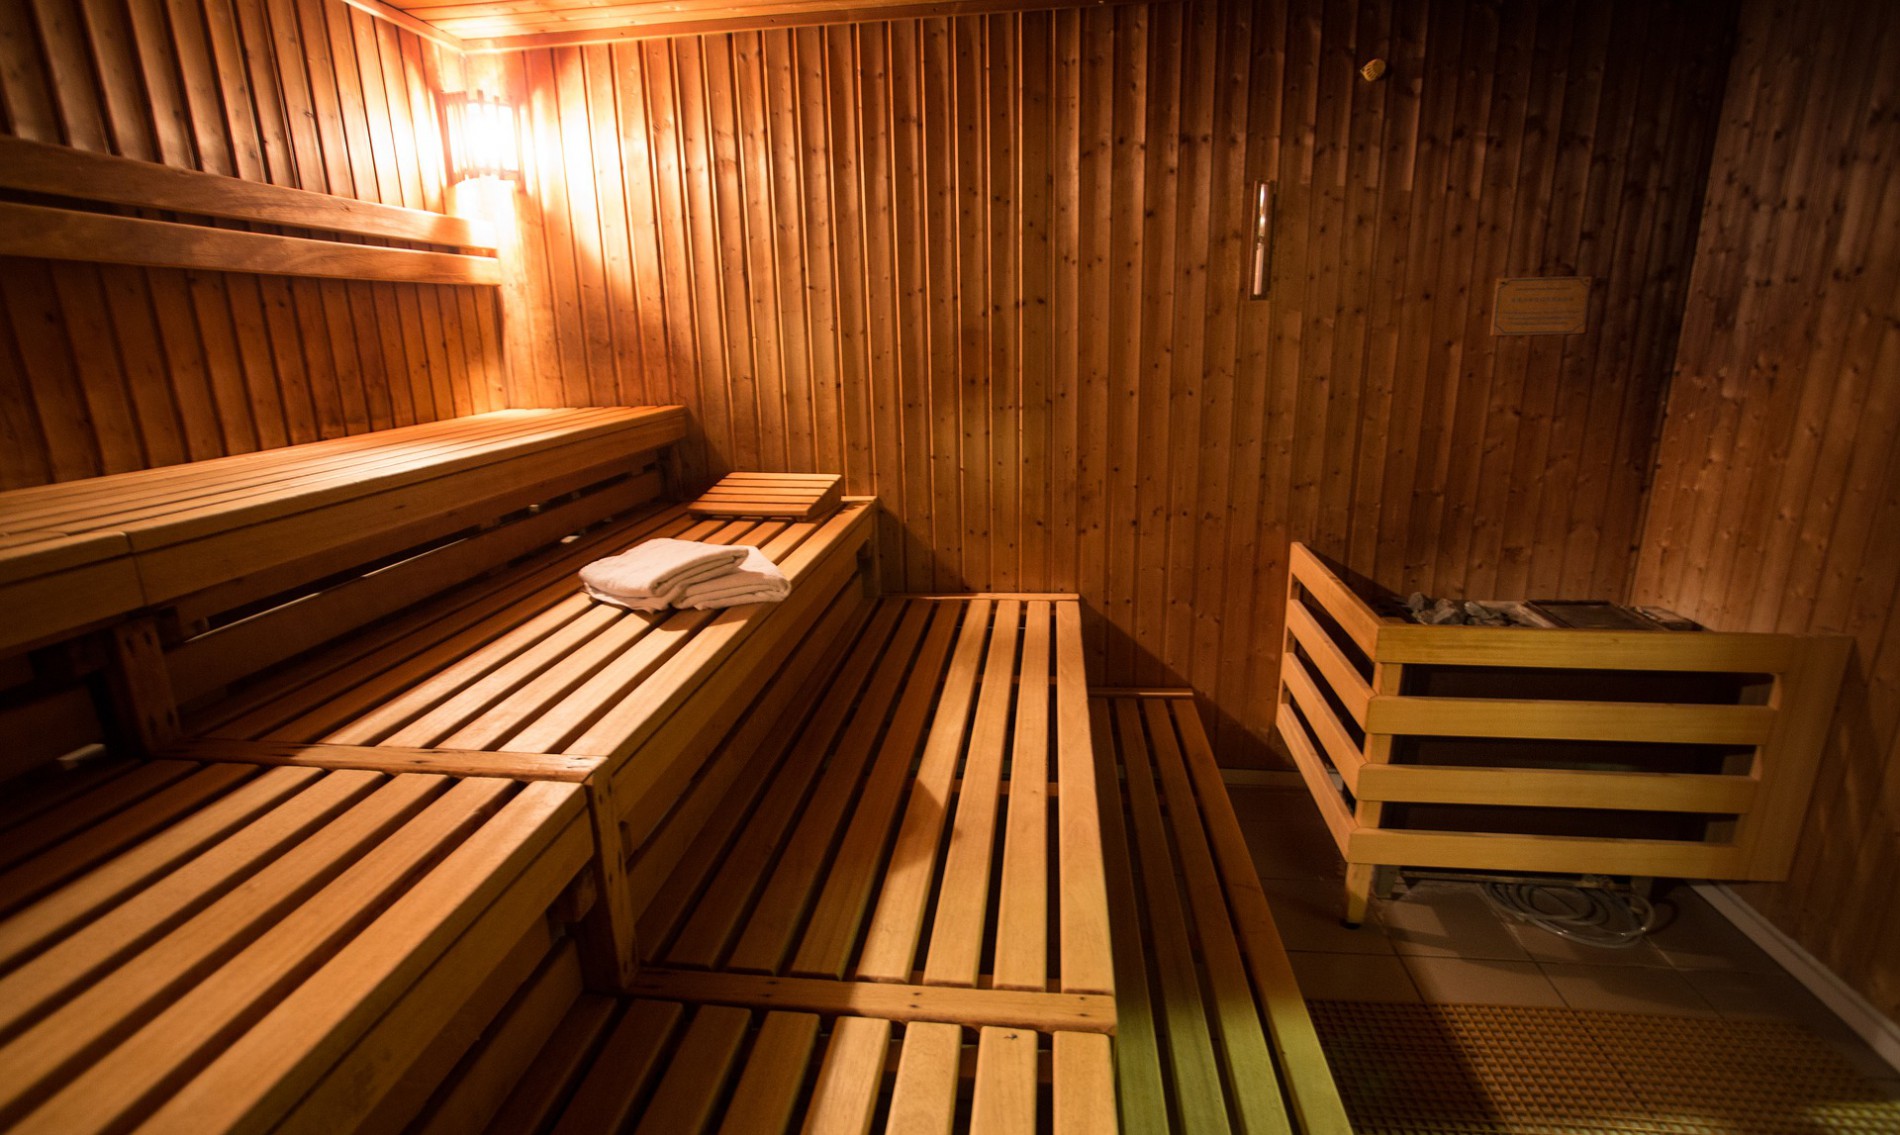 Wel of badkleding in de sauna, hoe zat het ook alweer? | Week van de